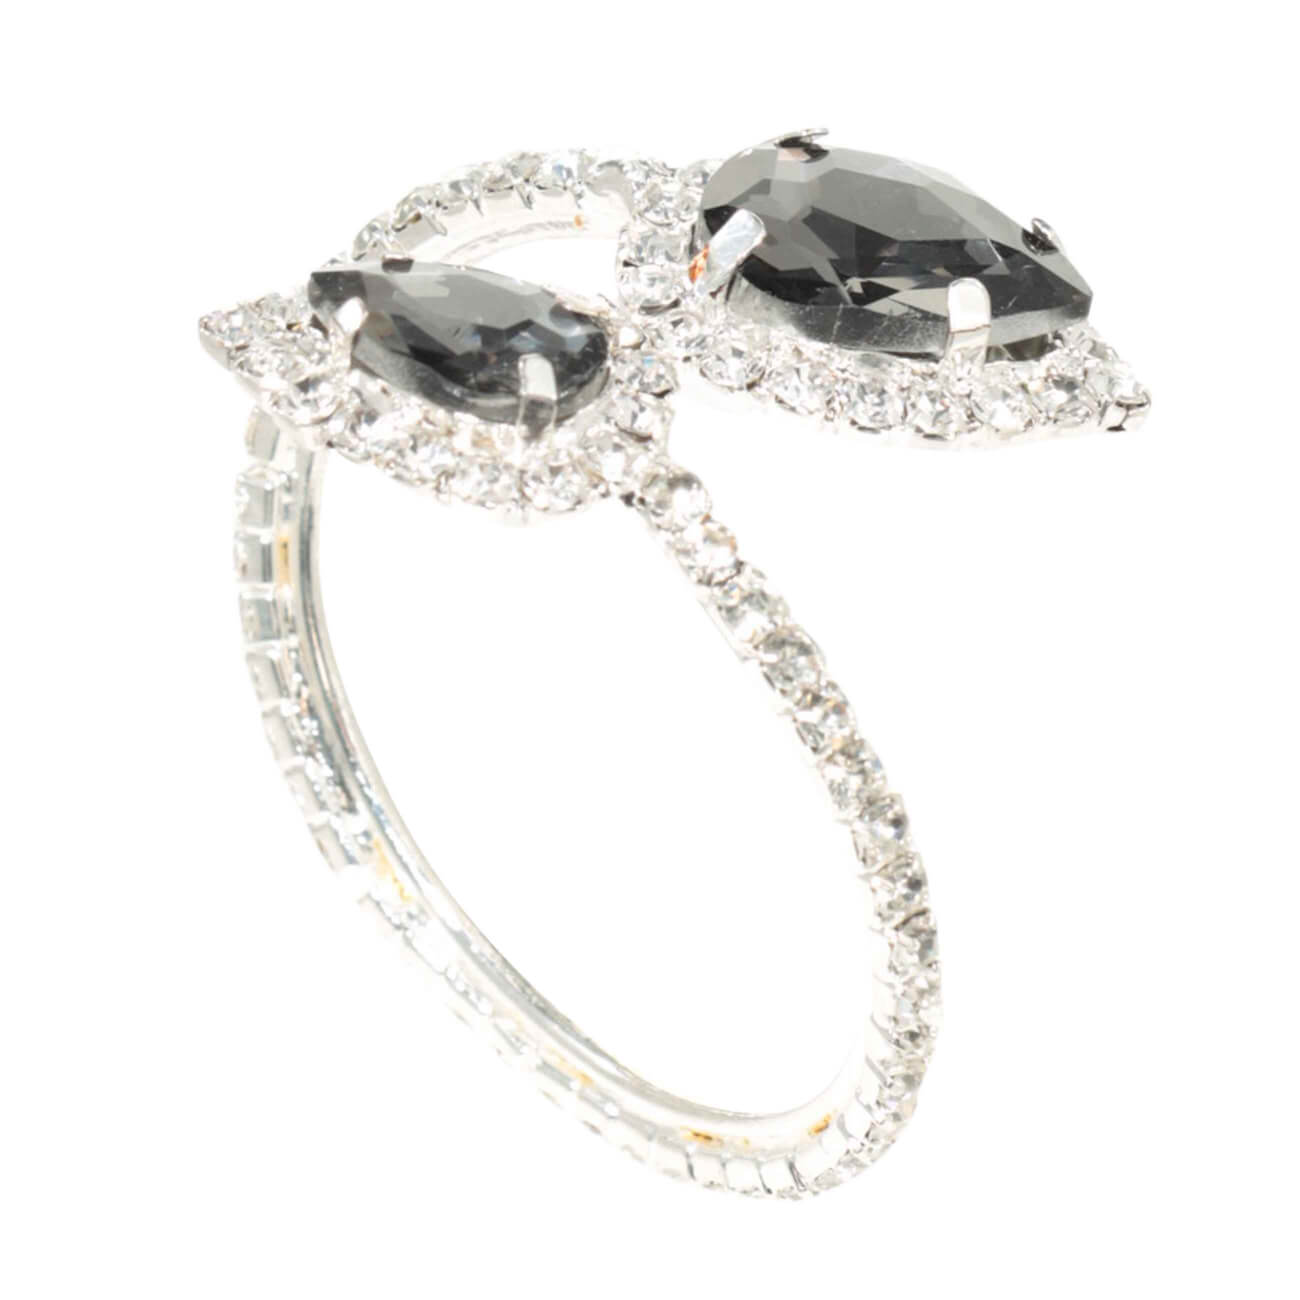 Кольцо для салфеток, 5 см, металл/стекло, серебристое, Капли, Winter antarctica проставочное кольцо joy kie md at 01 alloy 6061 28 6 5mm анодированное серебристое